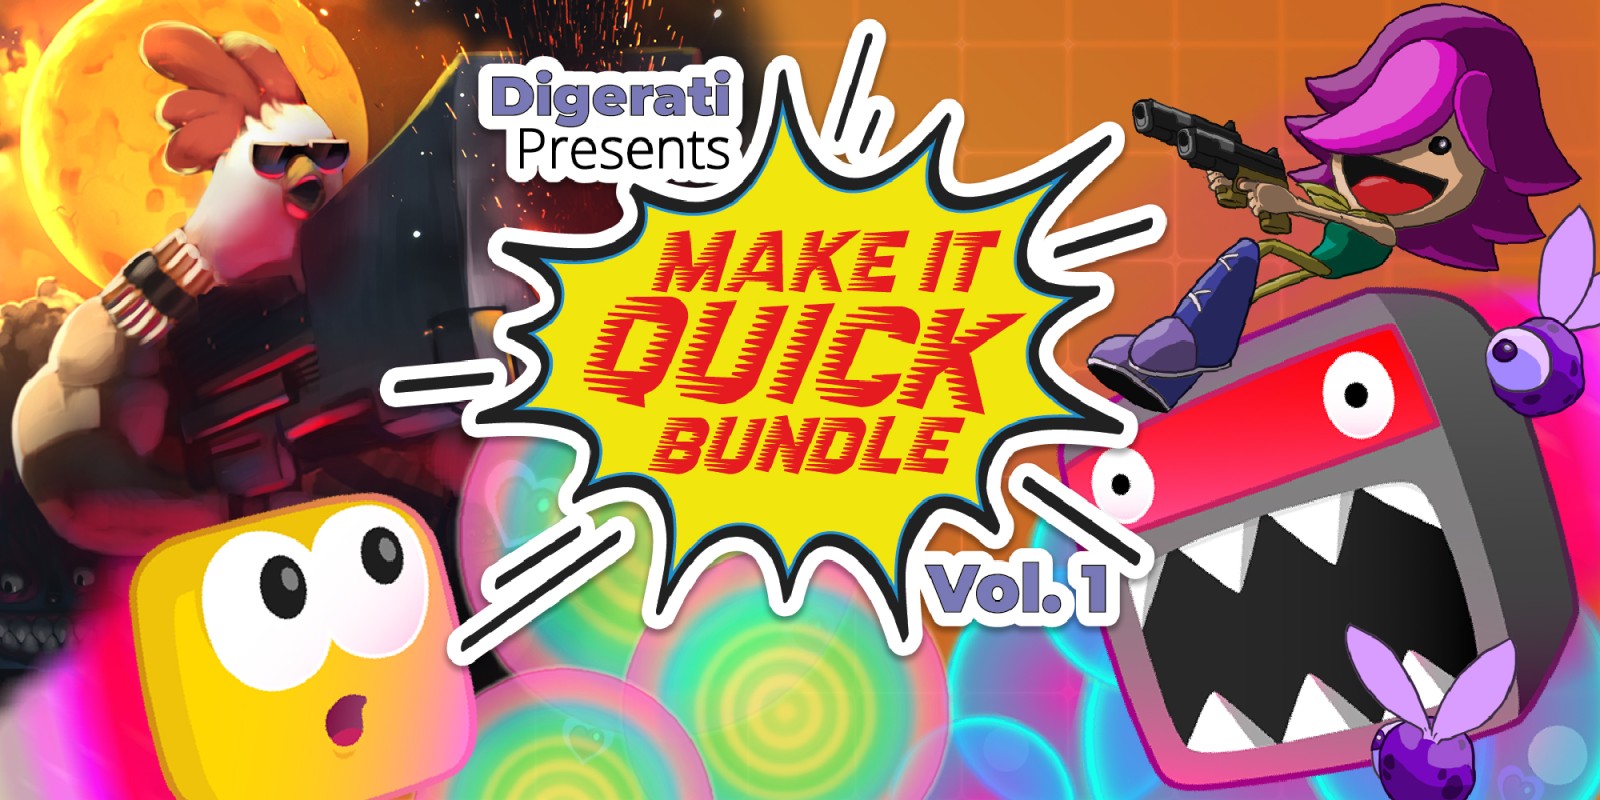 Digerati Presents: Make It Quick Bundle Vol. 1